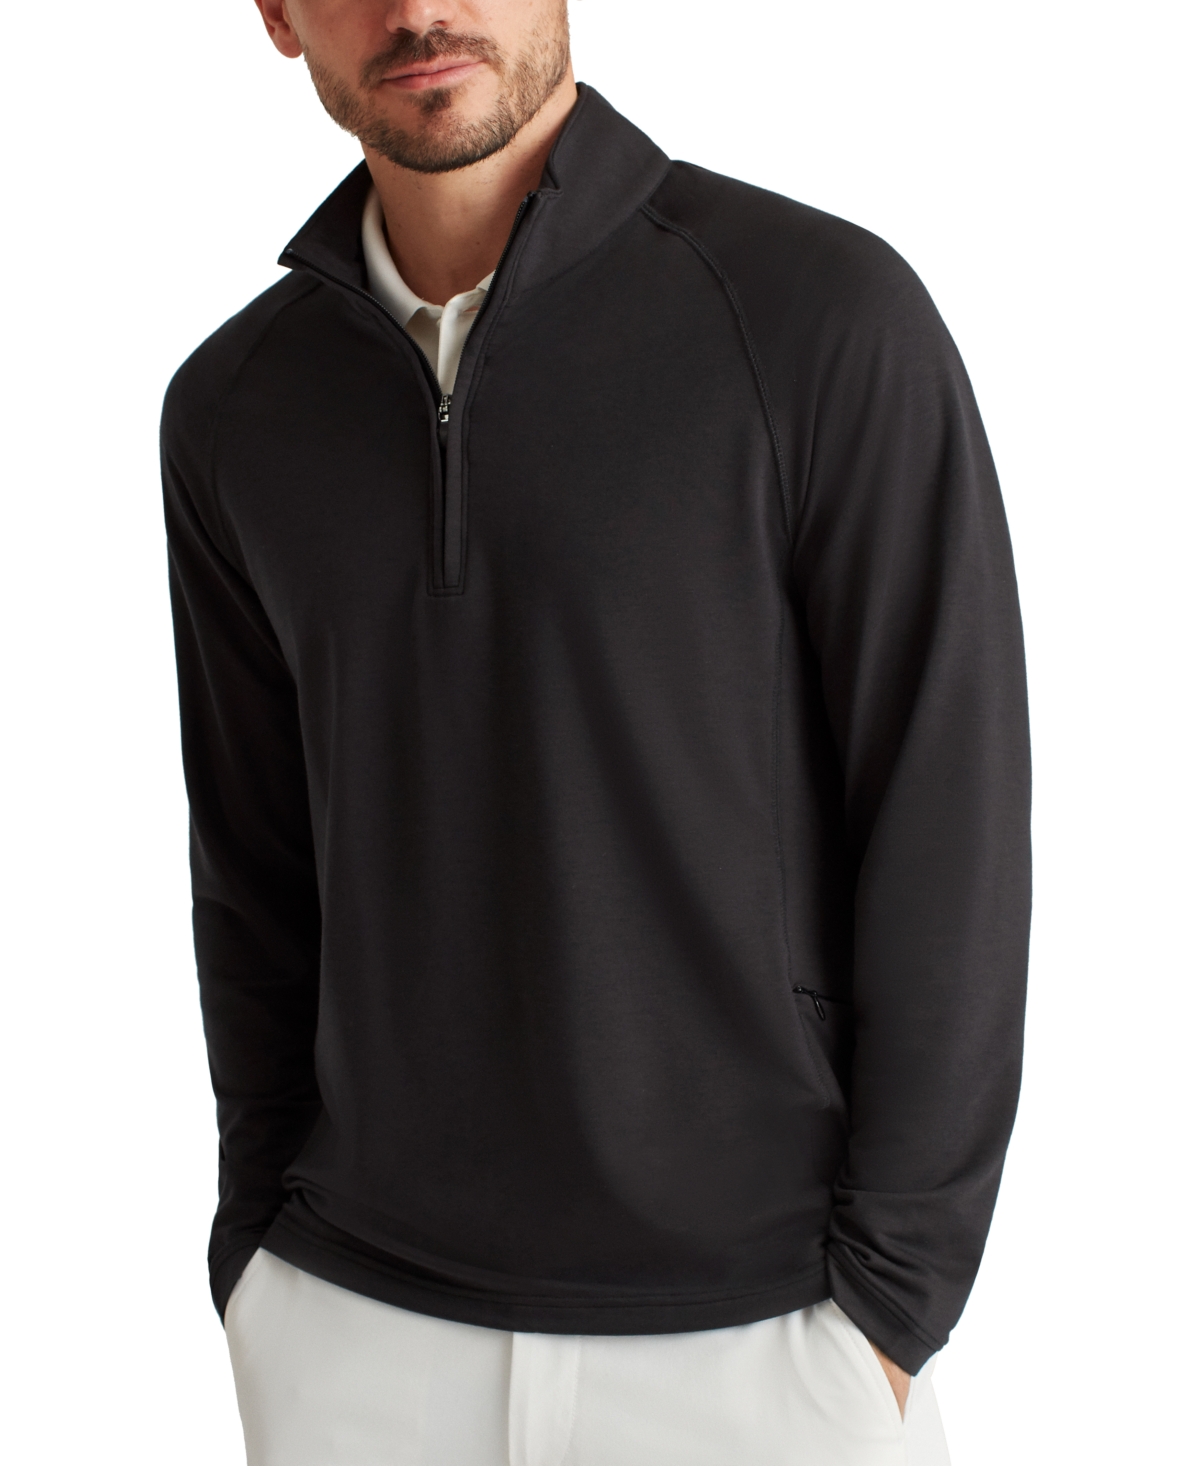 Men's Long Sleeve Half-Zip Pullover Sweatshirt - Black